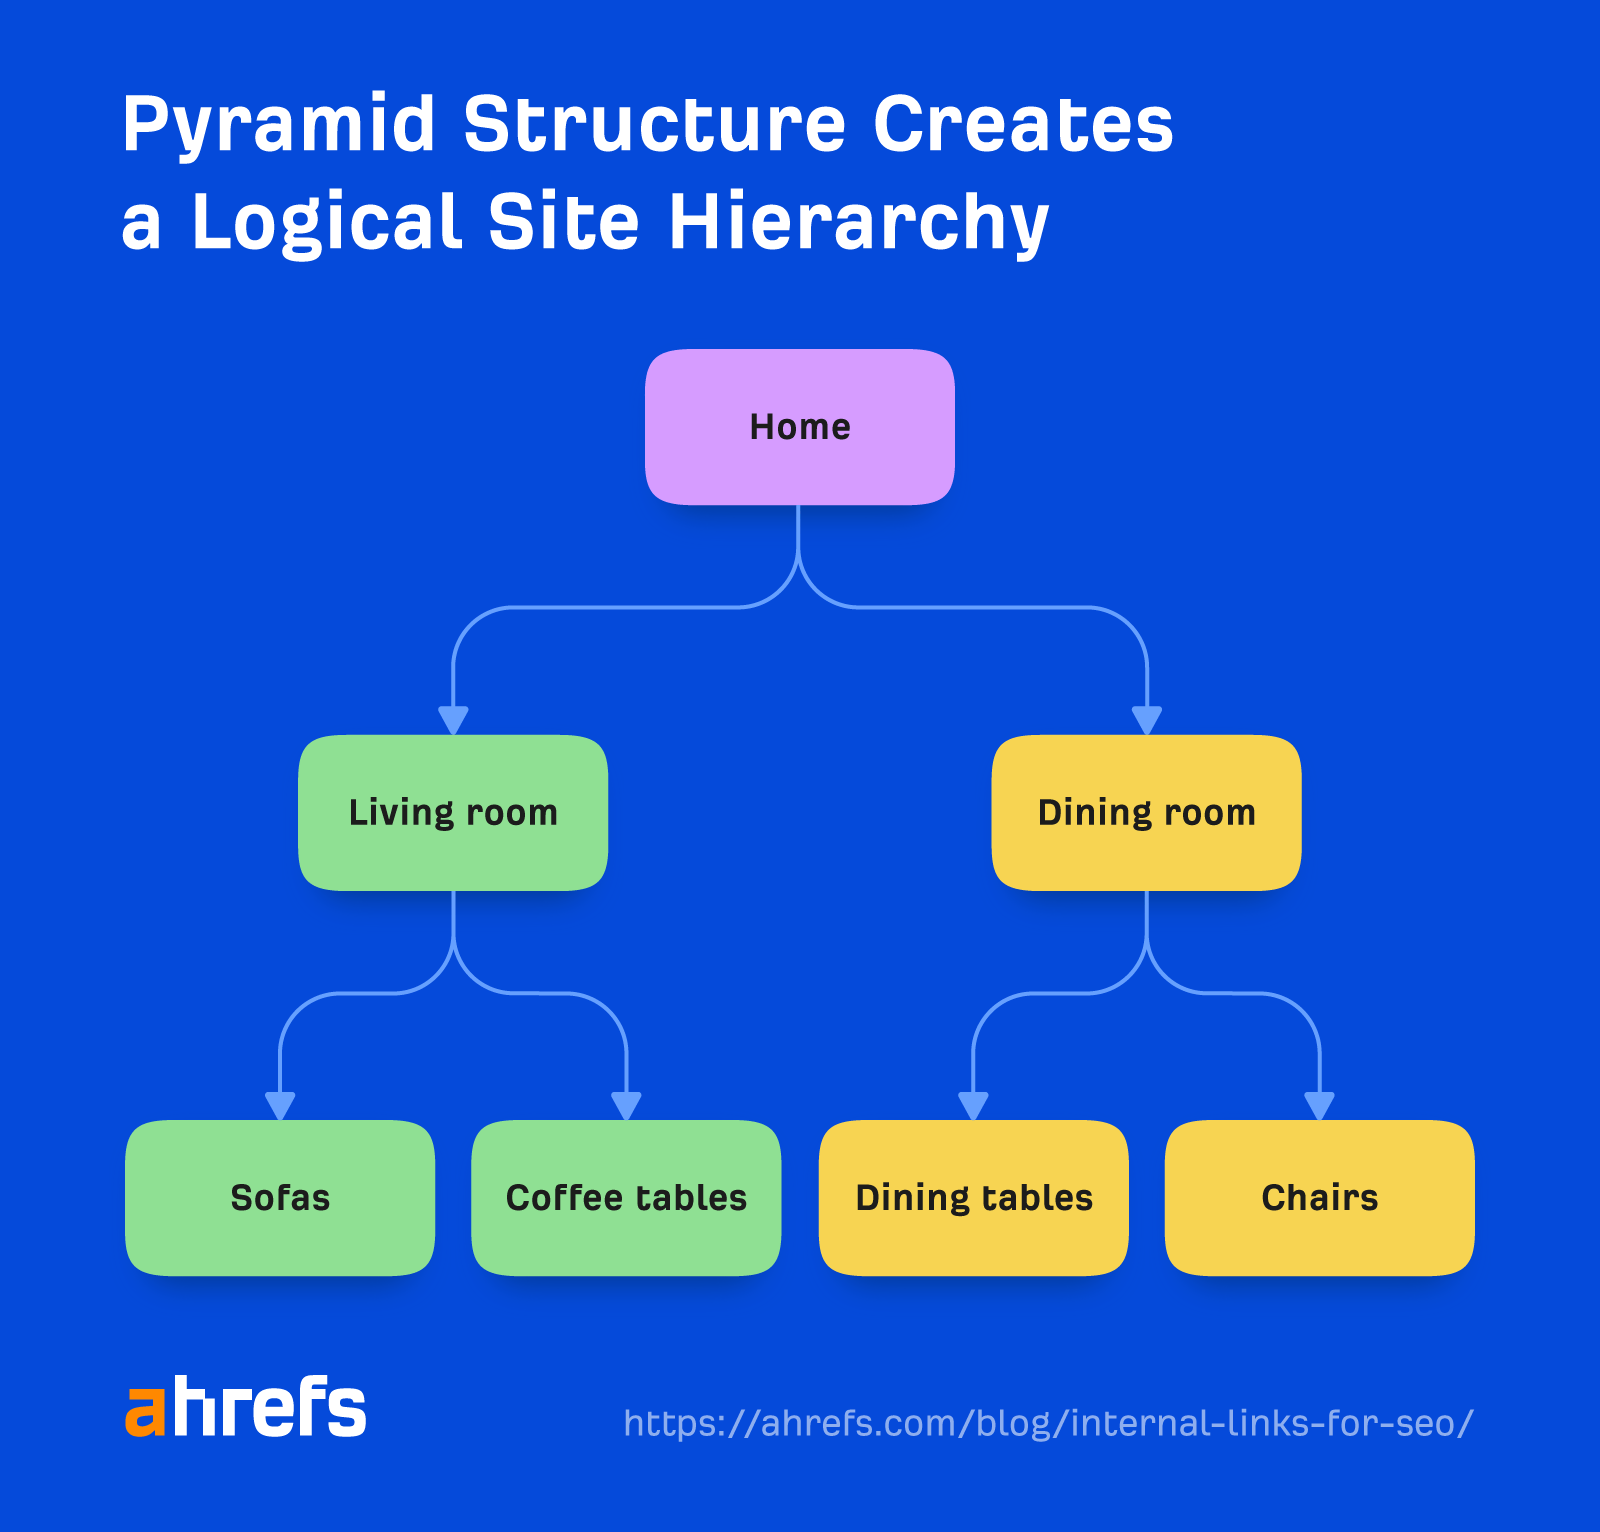 Diagrama de flujo que muestra cómo una estructura piramidal crea una jerarquía lógica de sitios